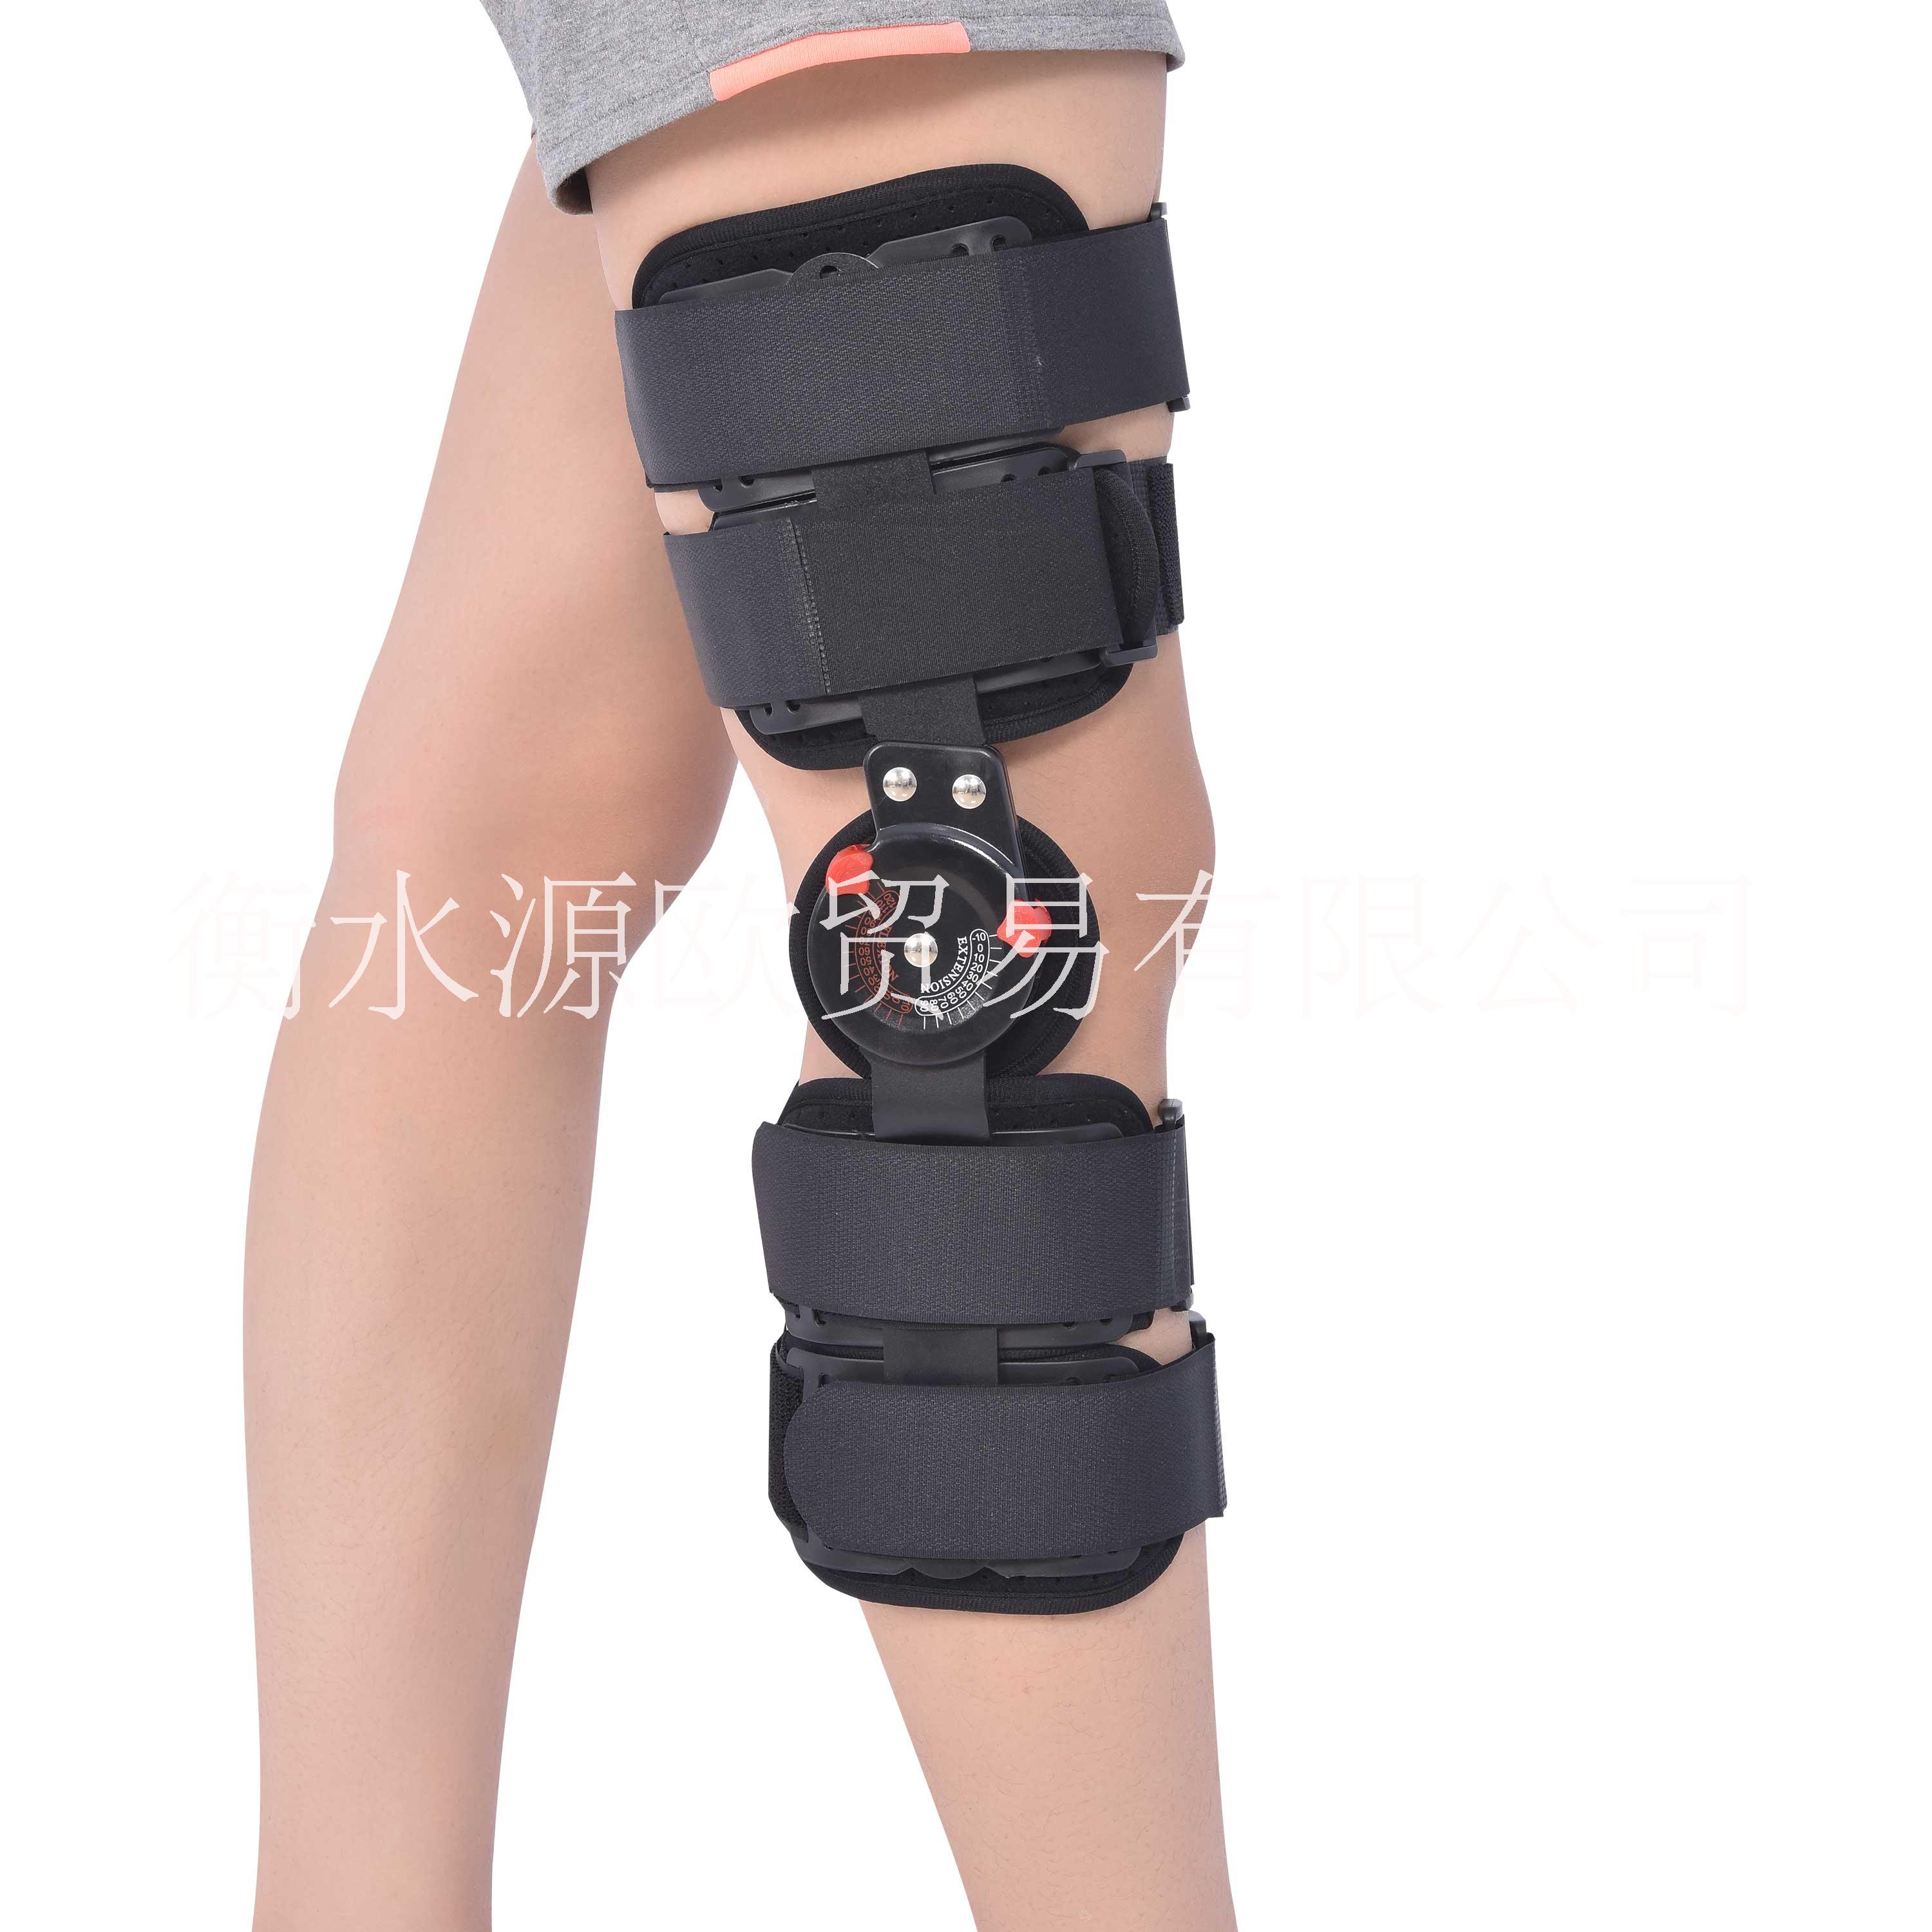 可调节膝关节固定支具A鸡西可调节膝关节固定支具A膝关节支具厂家